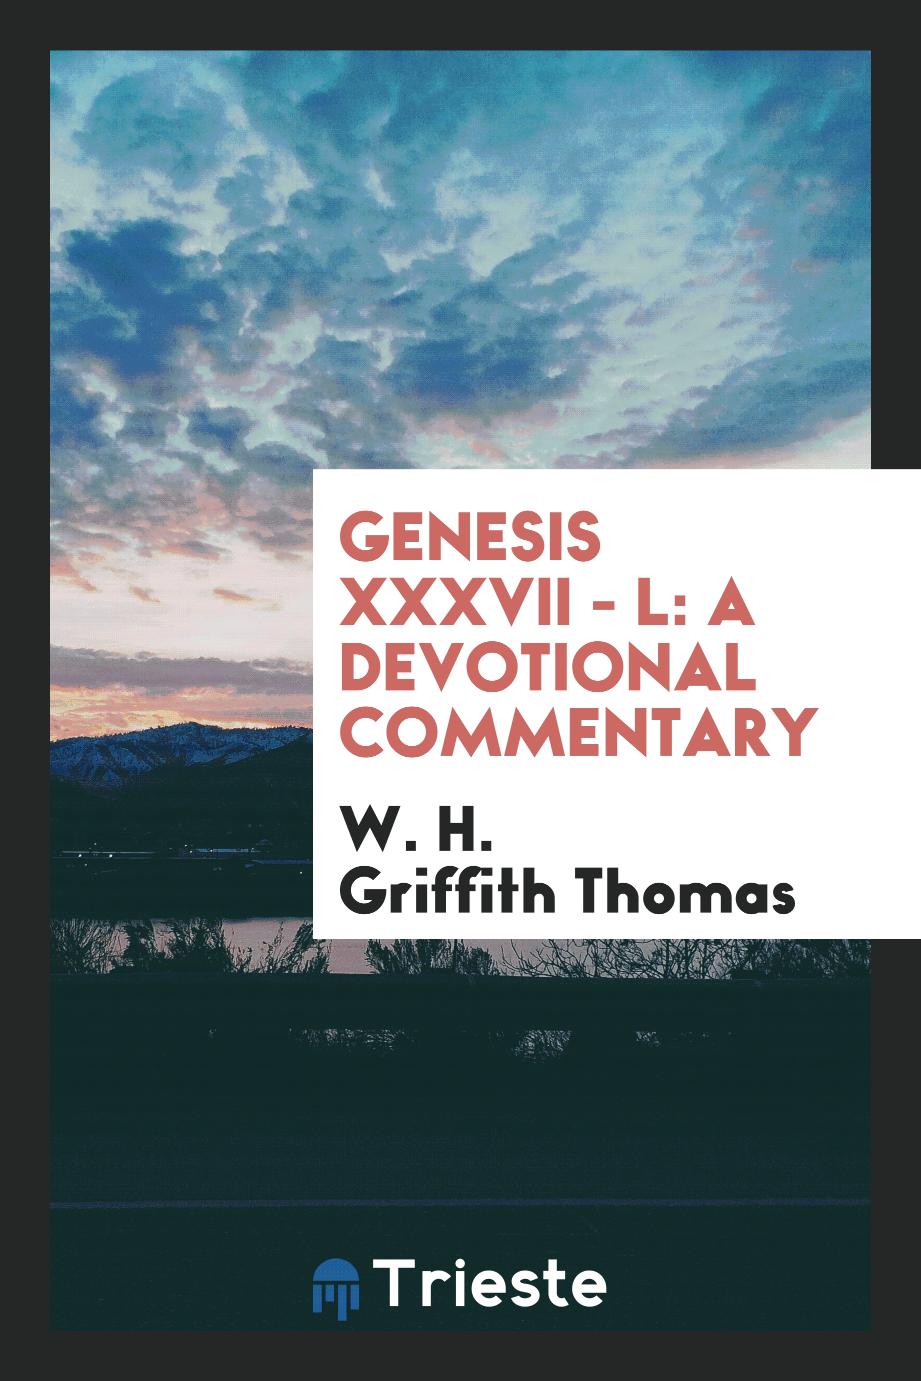 Genesis XXXVII - L: a devotional commentary